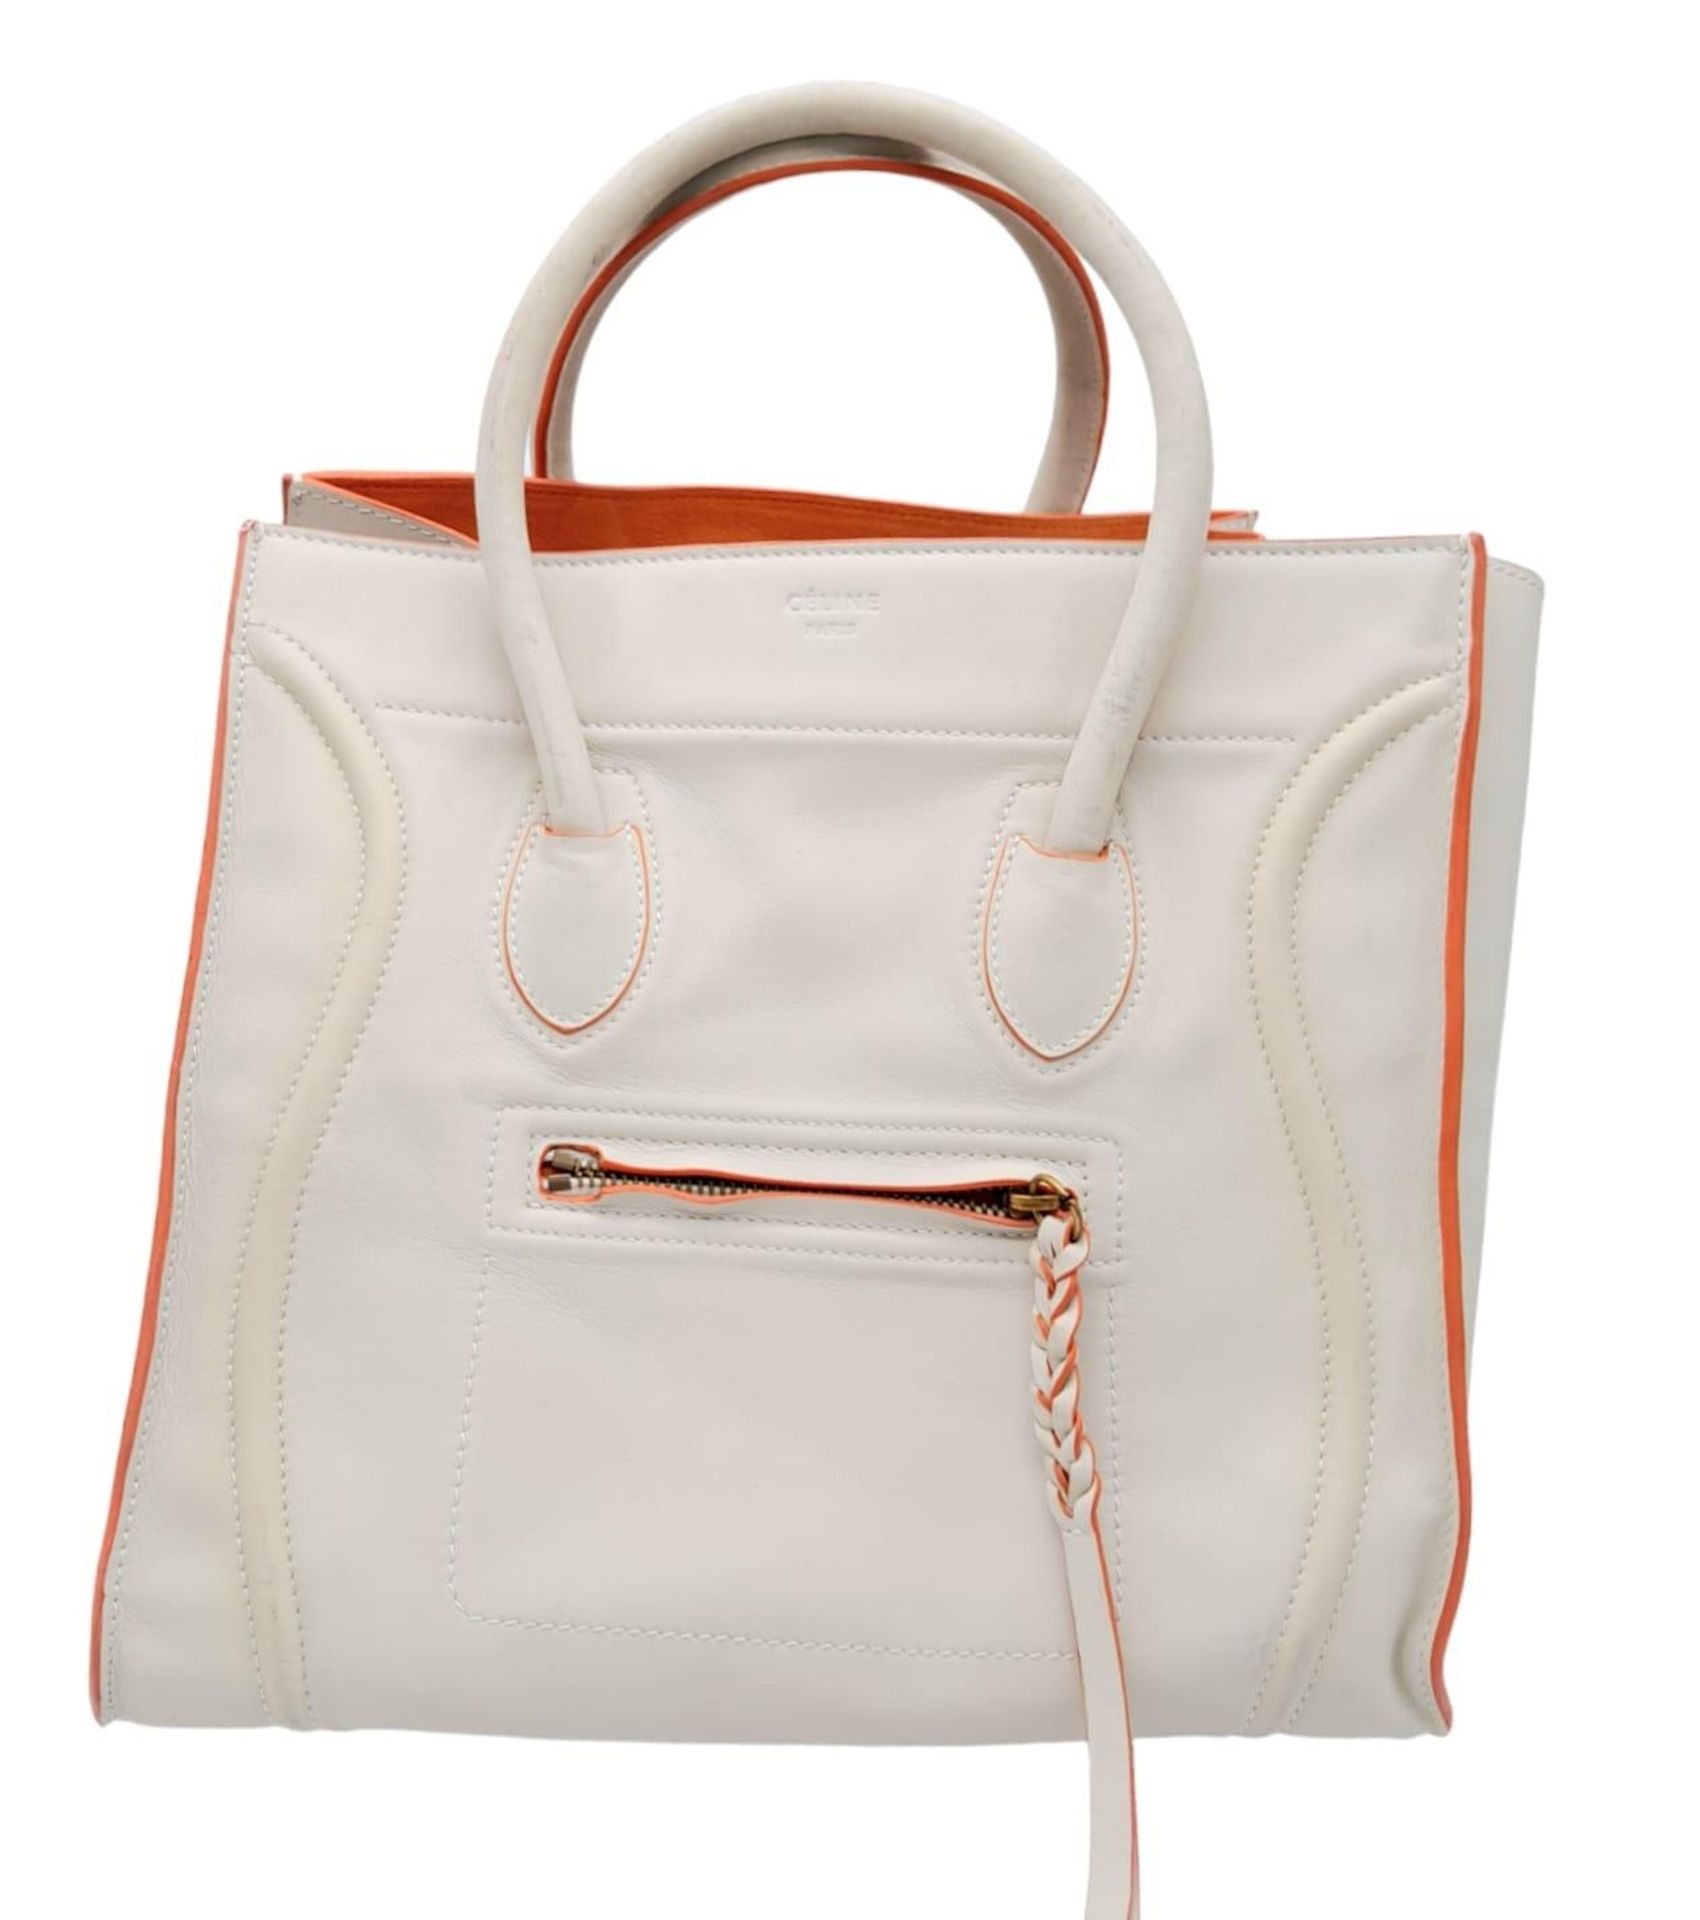 A Celine - Paris ladies tote bag , cream leather with orange interior, dimensions: 30 x 24 x 40 cm